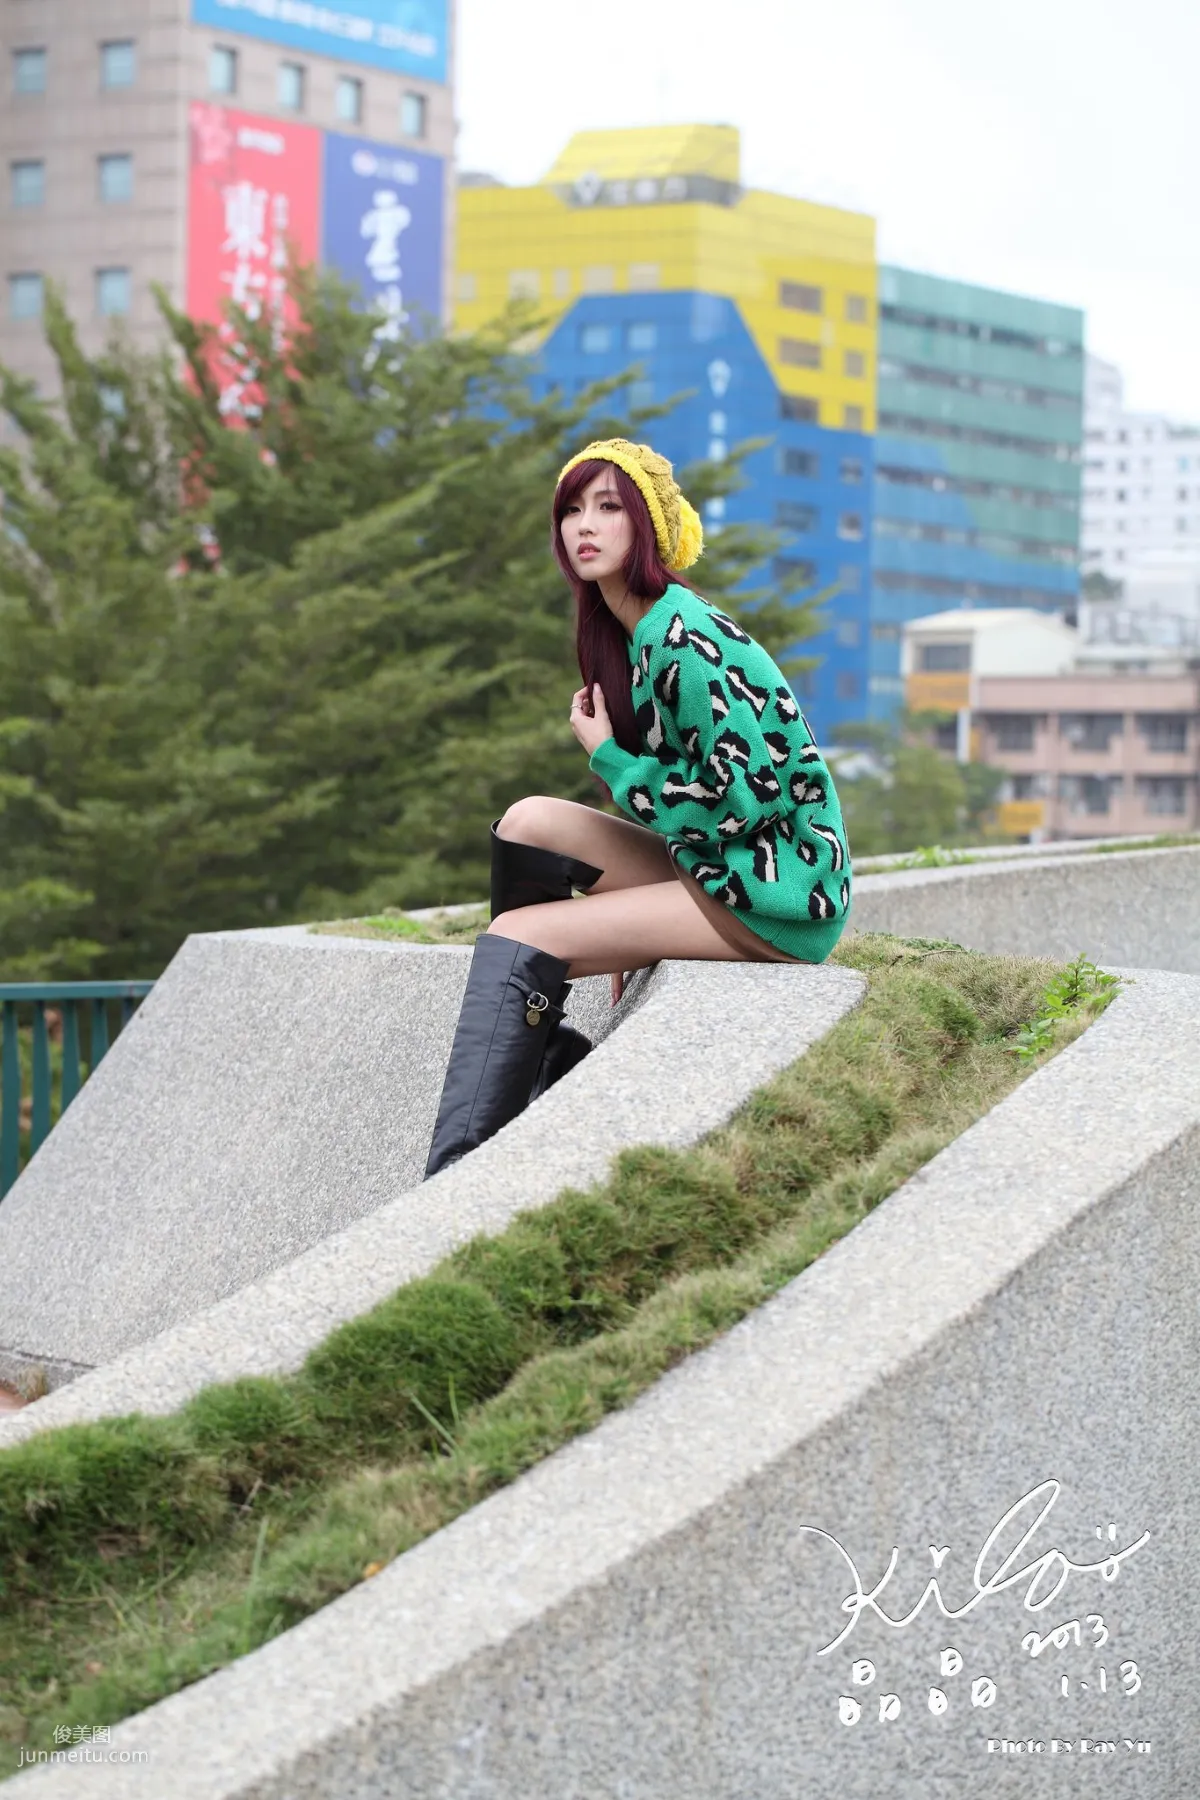 台湾模特廖挺伶/Kila晶晶《绿色长衣+长靴》街拍写真集14